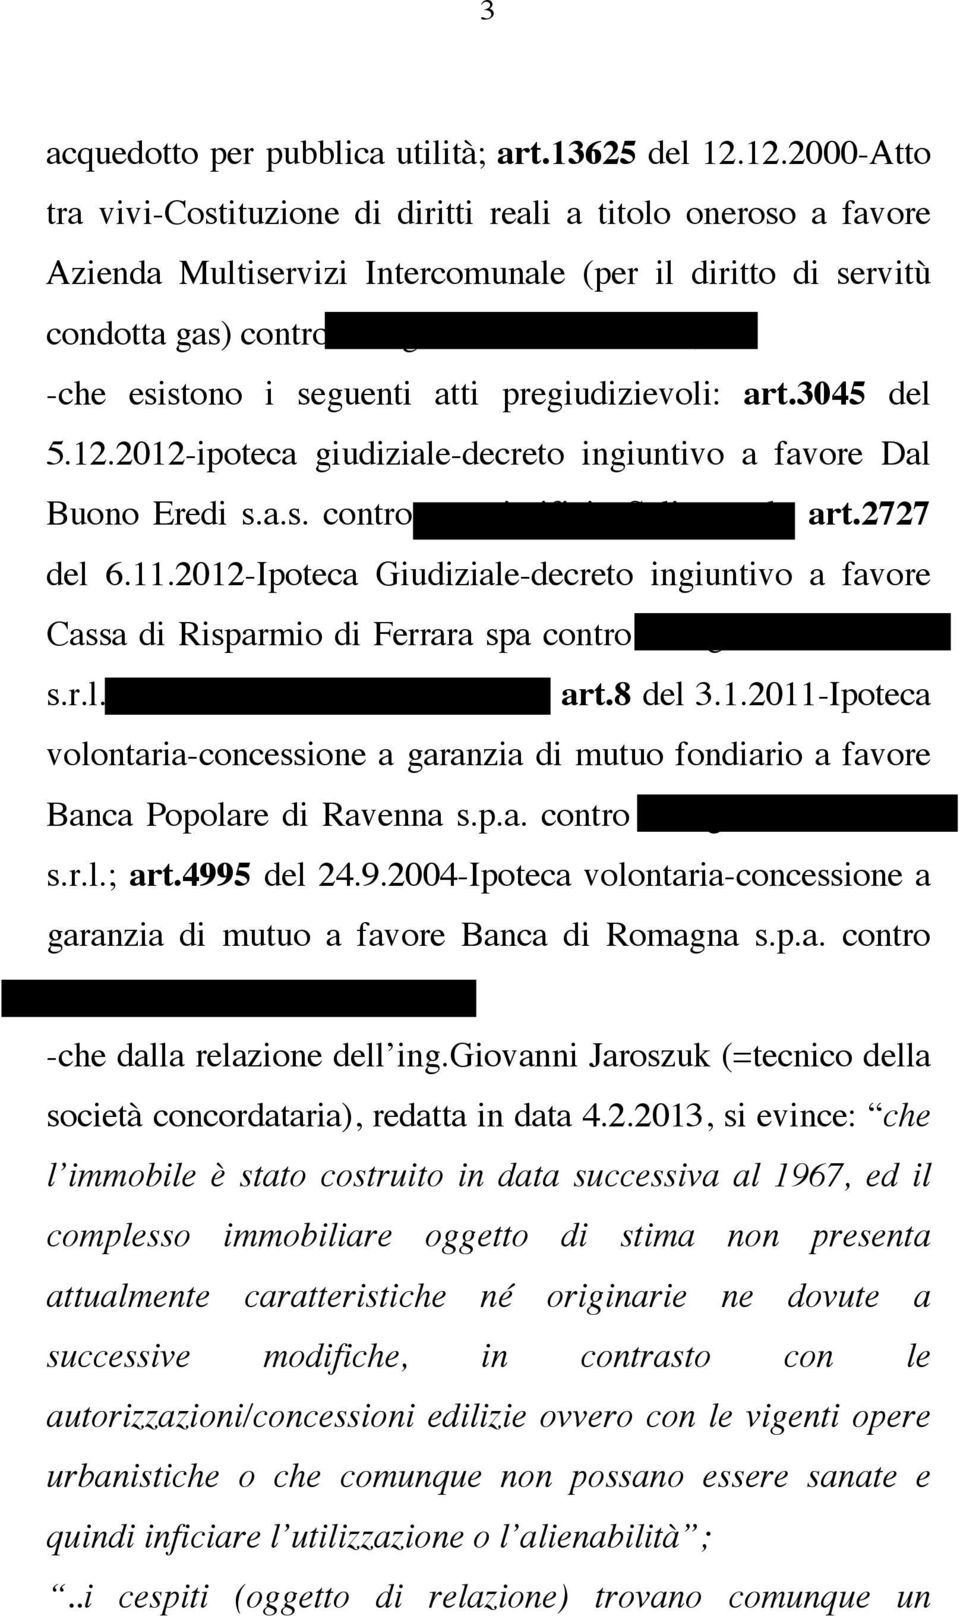 3045 del 5.12.2012-ipoteca giudiziale-decreto ingiuntivo a favore Dal Buono Eredi s.a.s. contro mangimificio Selice s.r.l.; art.2727 del 6.11.